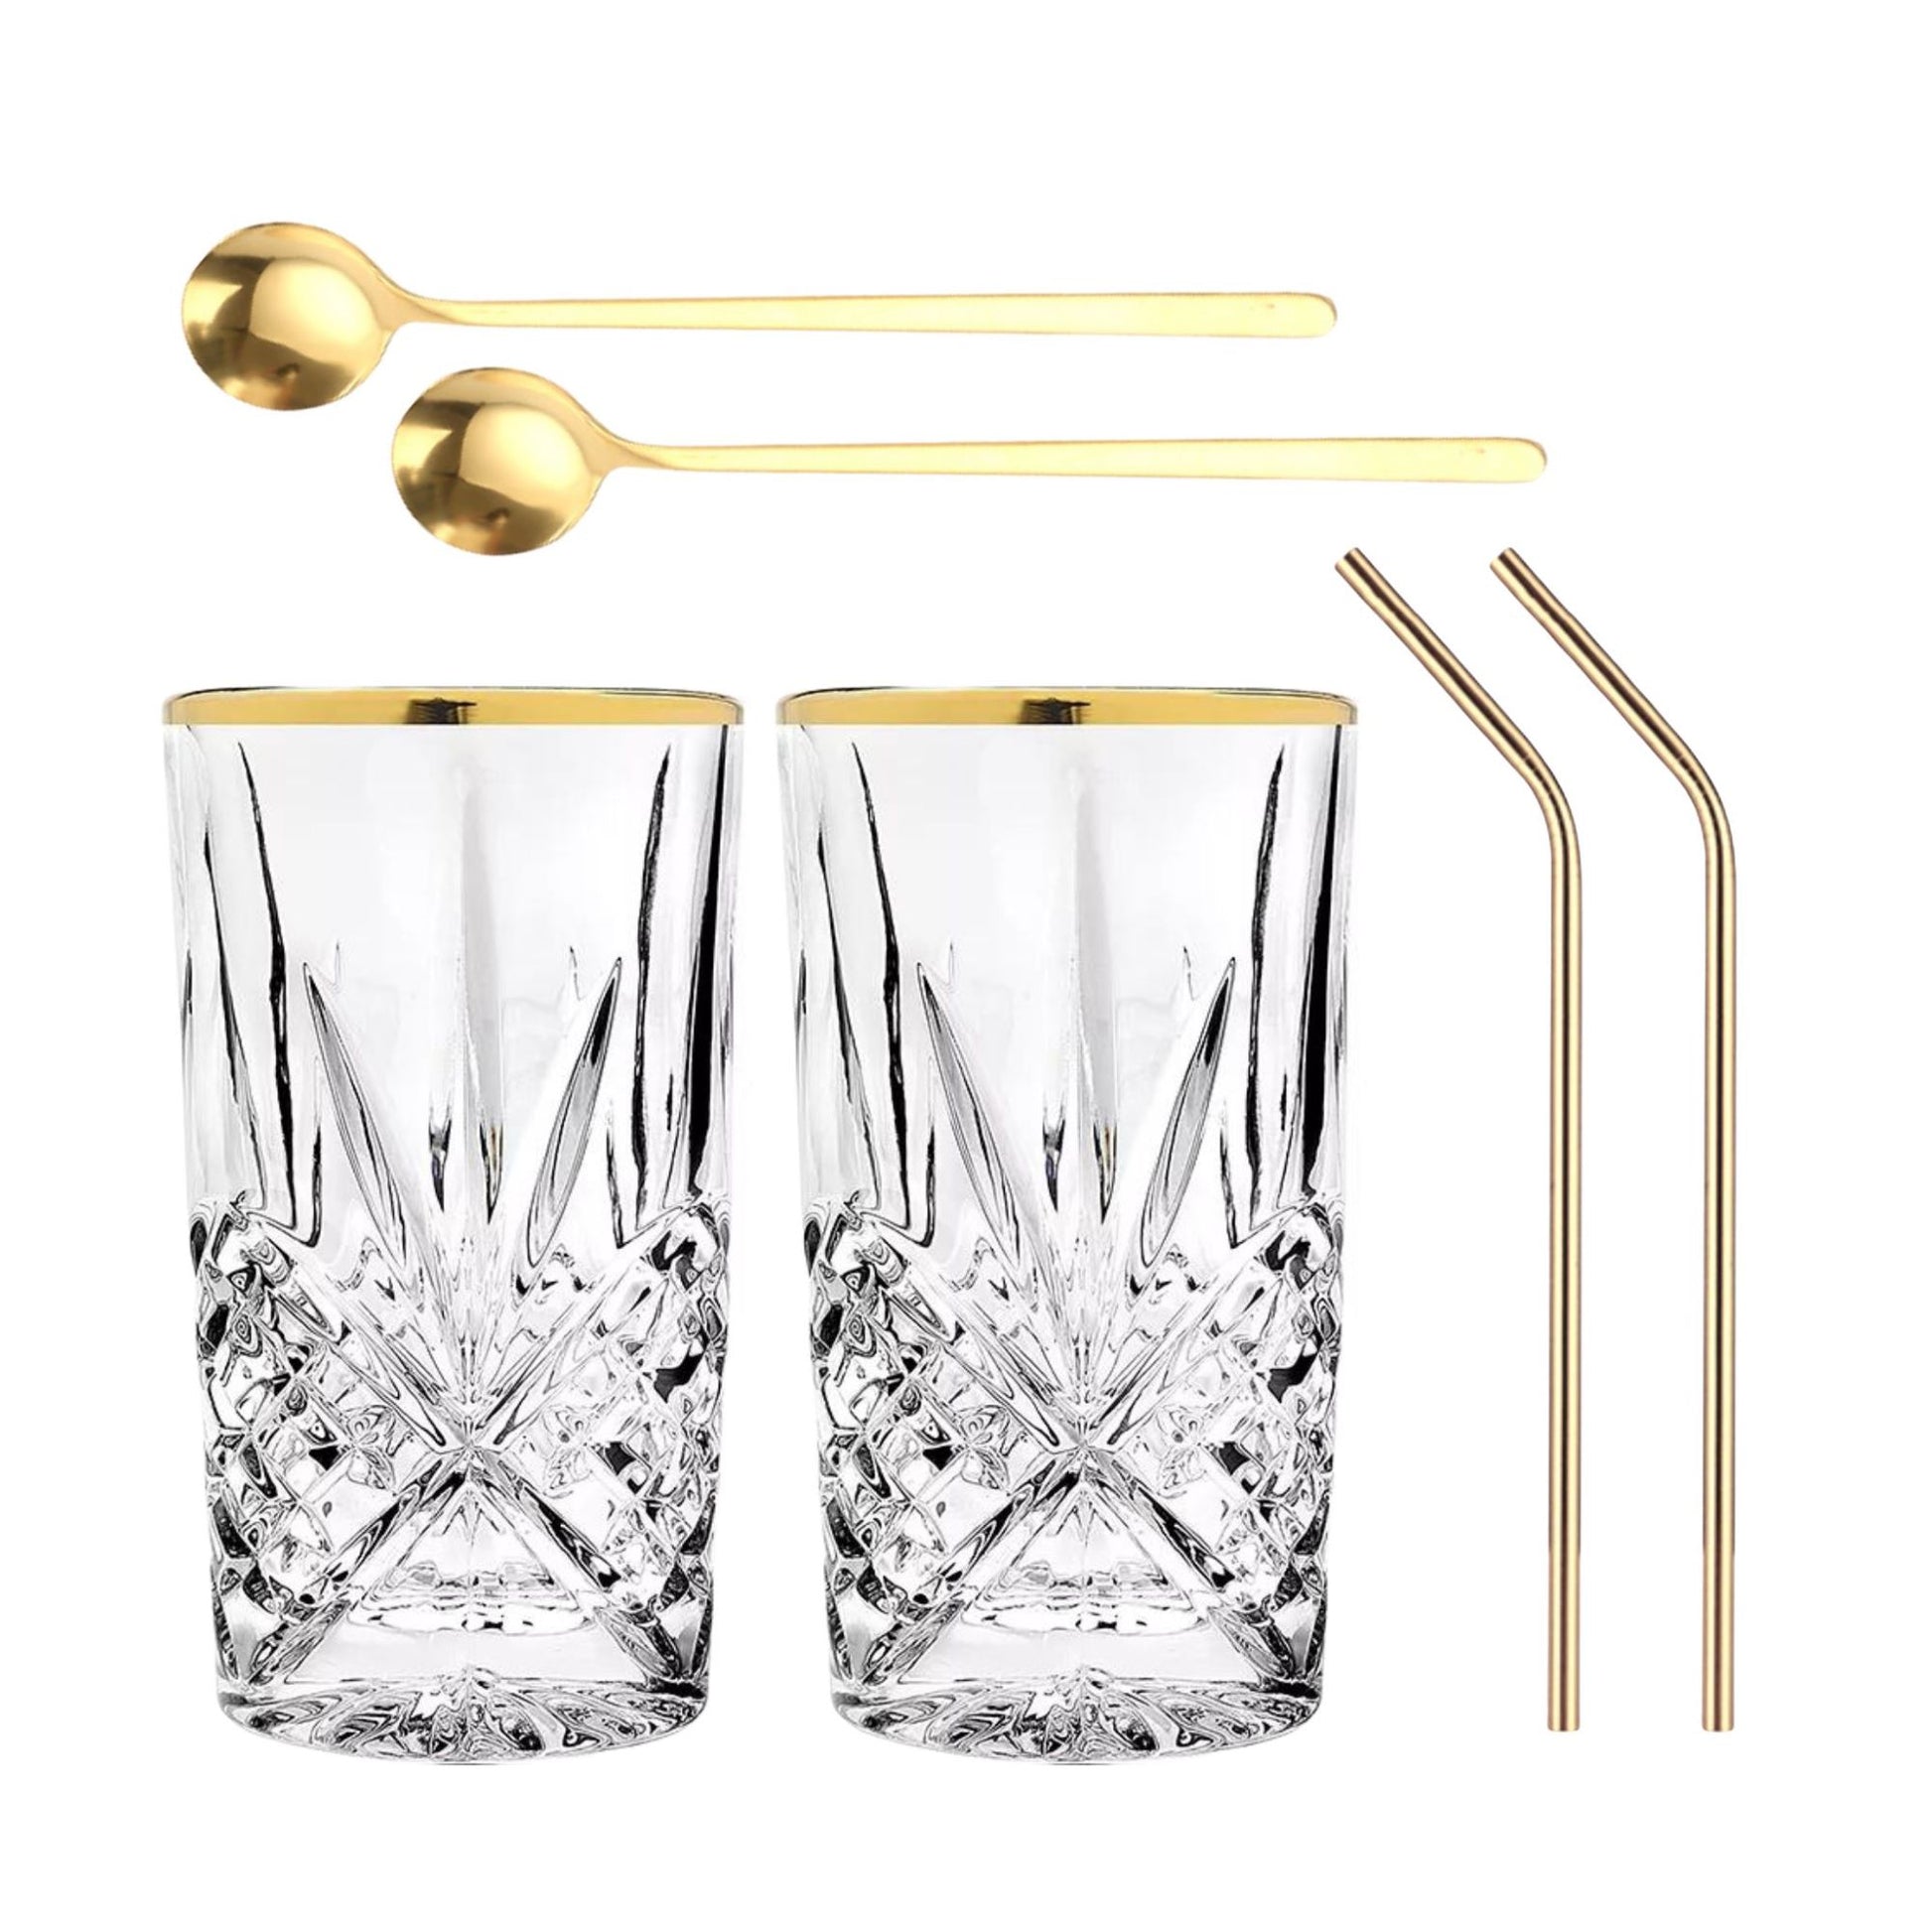 Set Luxus Kristall Latte Macchiato Gläser mit Goldrand 350ml Trinkgläser 2er Set "Star" mit goldenen Latte Macchiato Löffeln und goldenen Strohhalmen aus Edelstahl